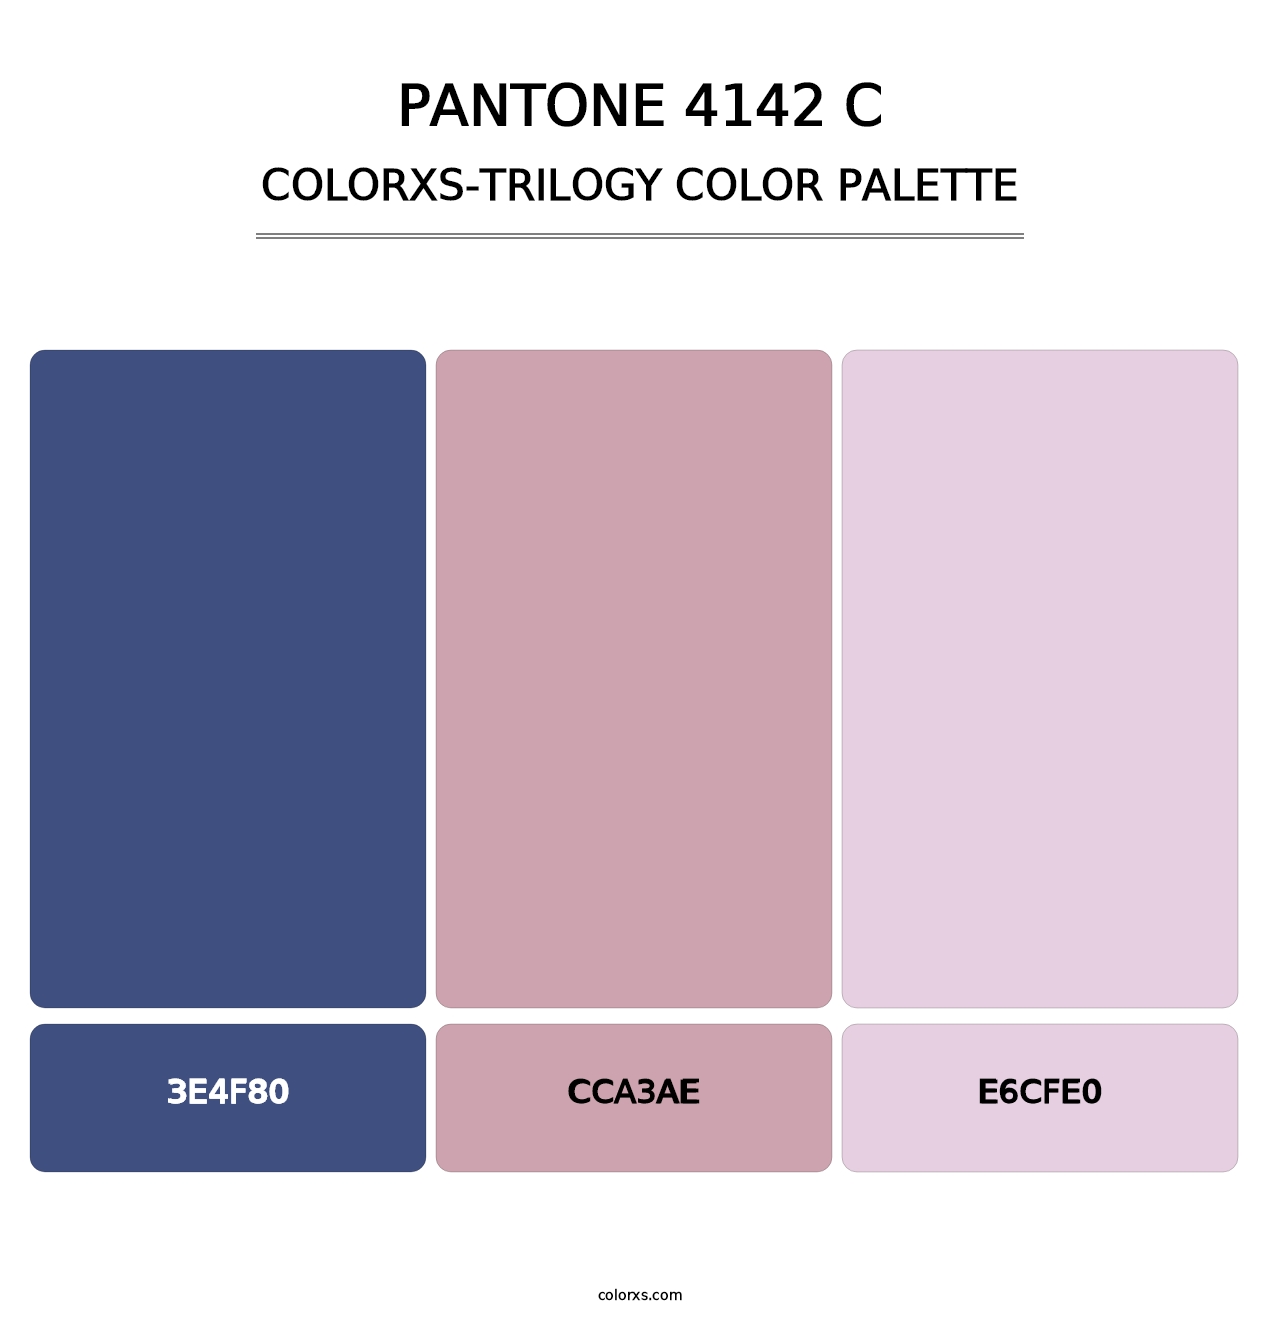 PANTONE 4142 C - Colorxs Trilogy Palette